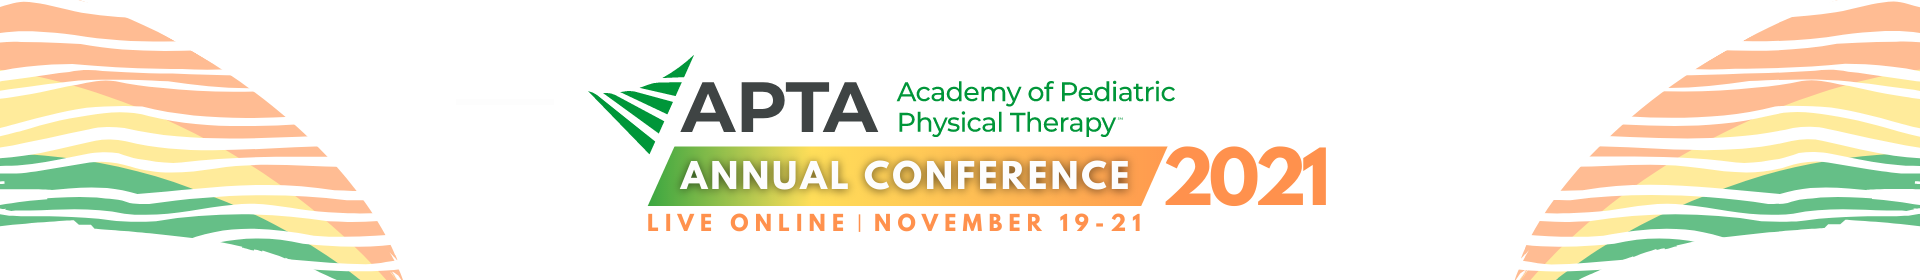 APTA Pediatrics Annual Conference 2021 Event Banner